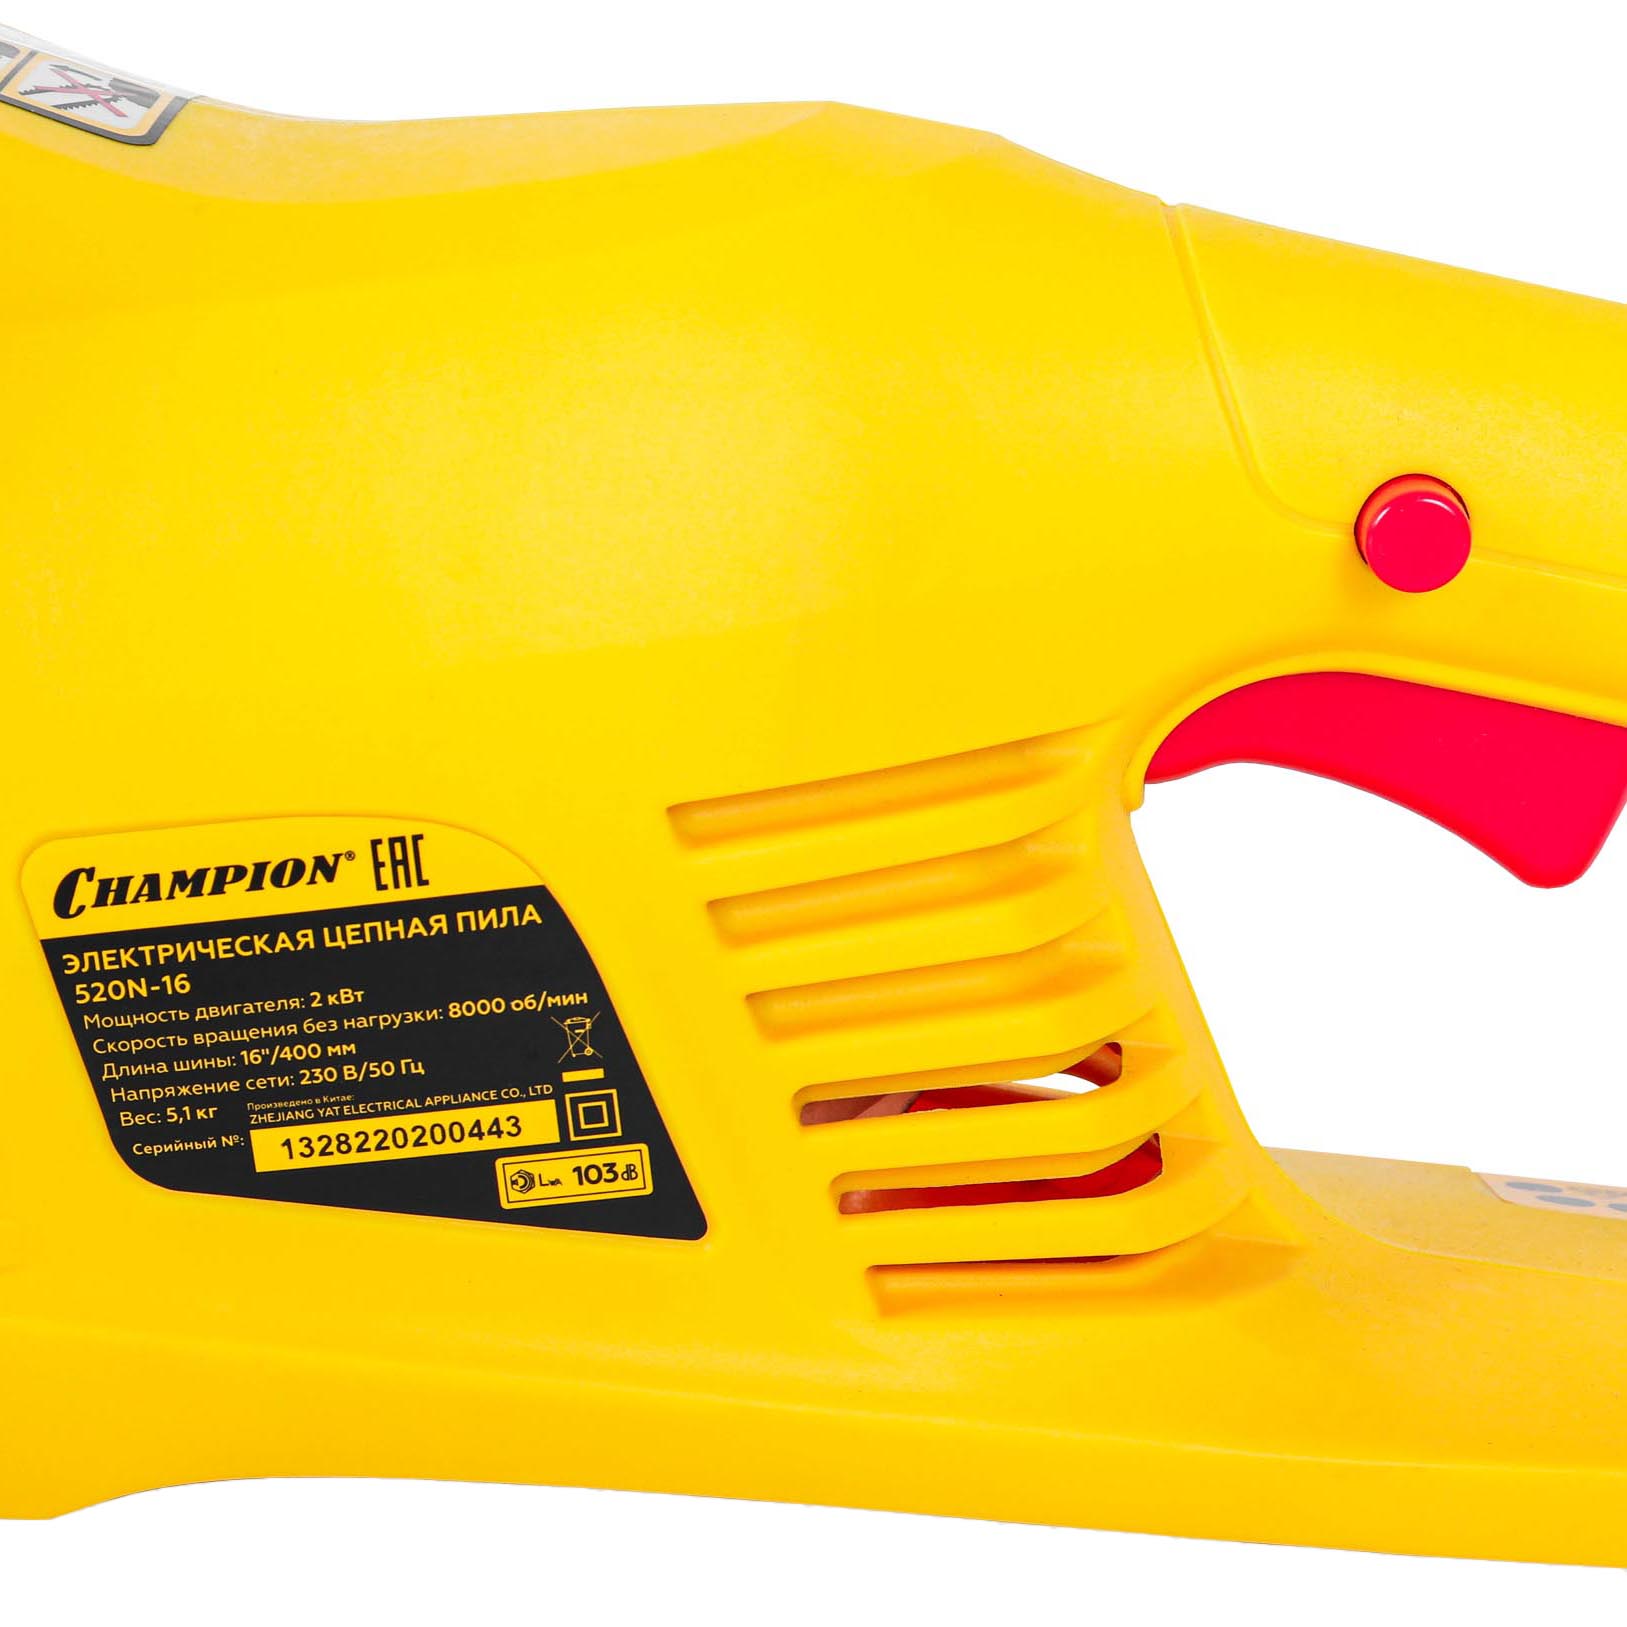 Электрическая цепная пила Champion 520N-16, цвет желтый - фото 3